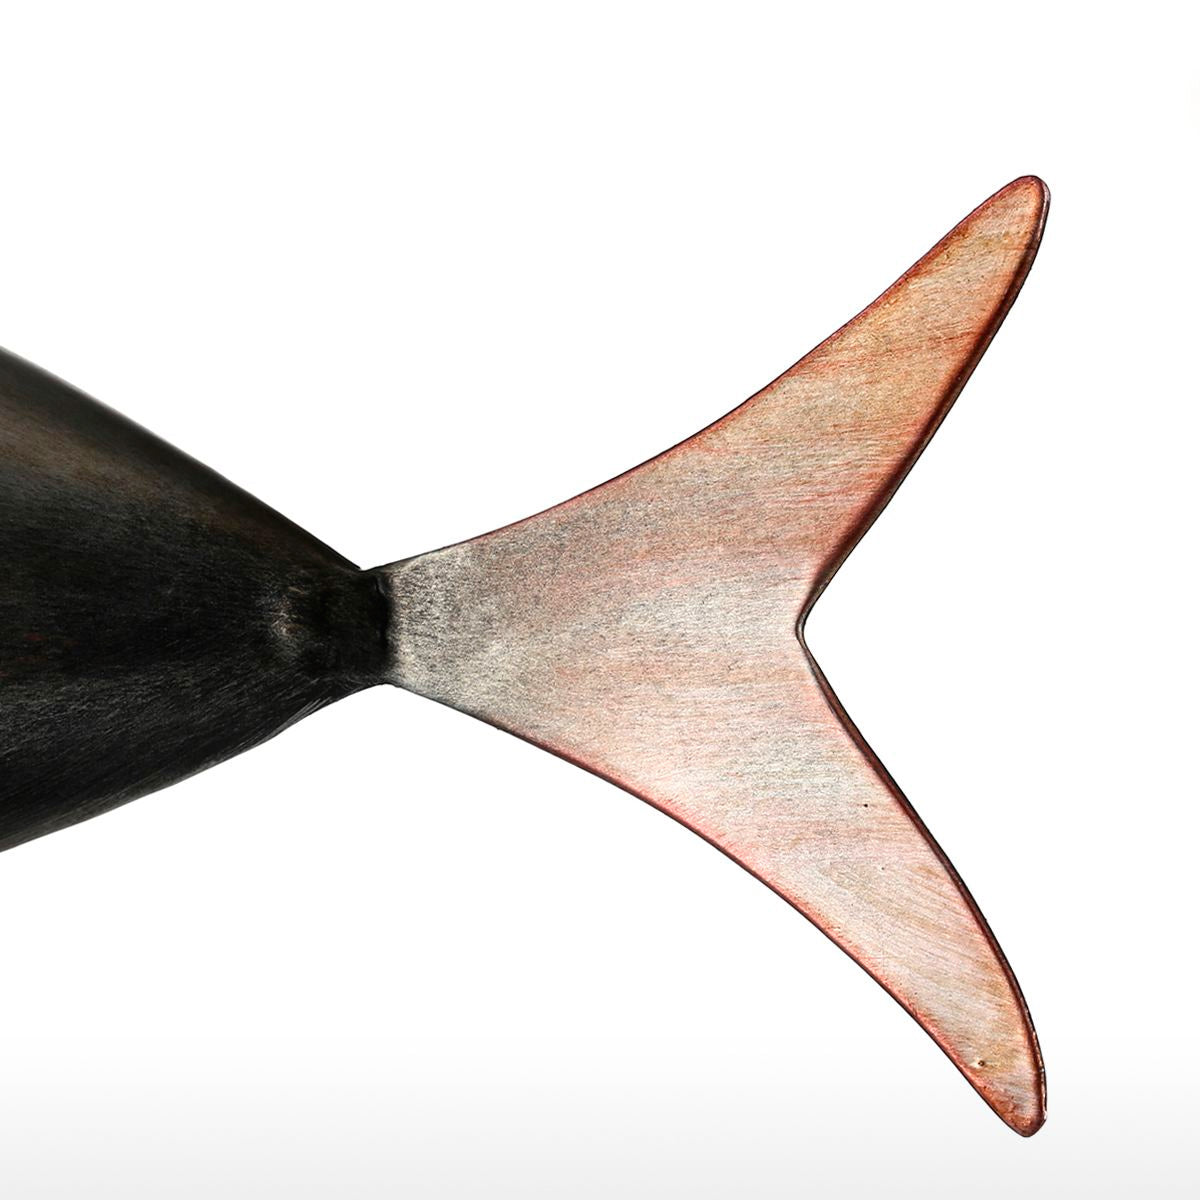 Scultura metallica a forma di pesce